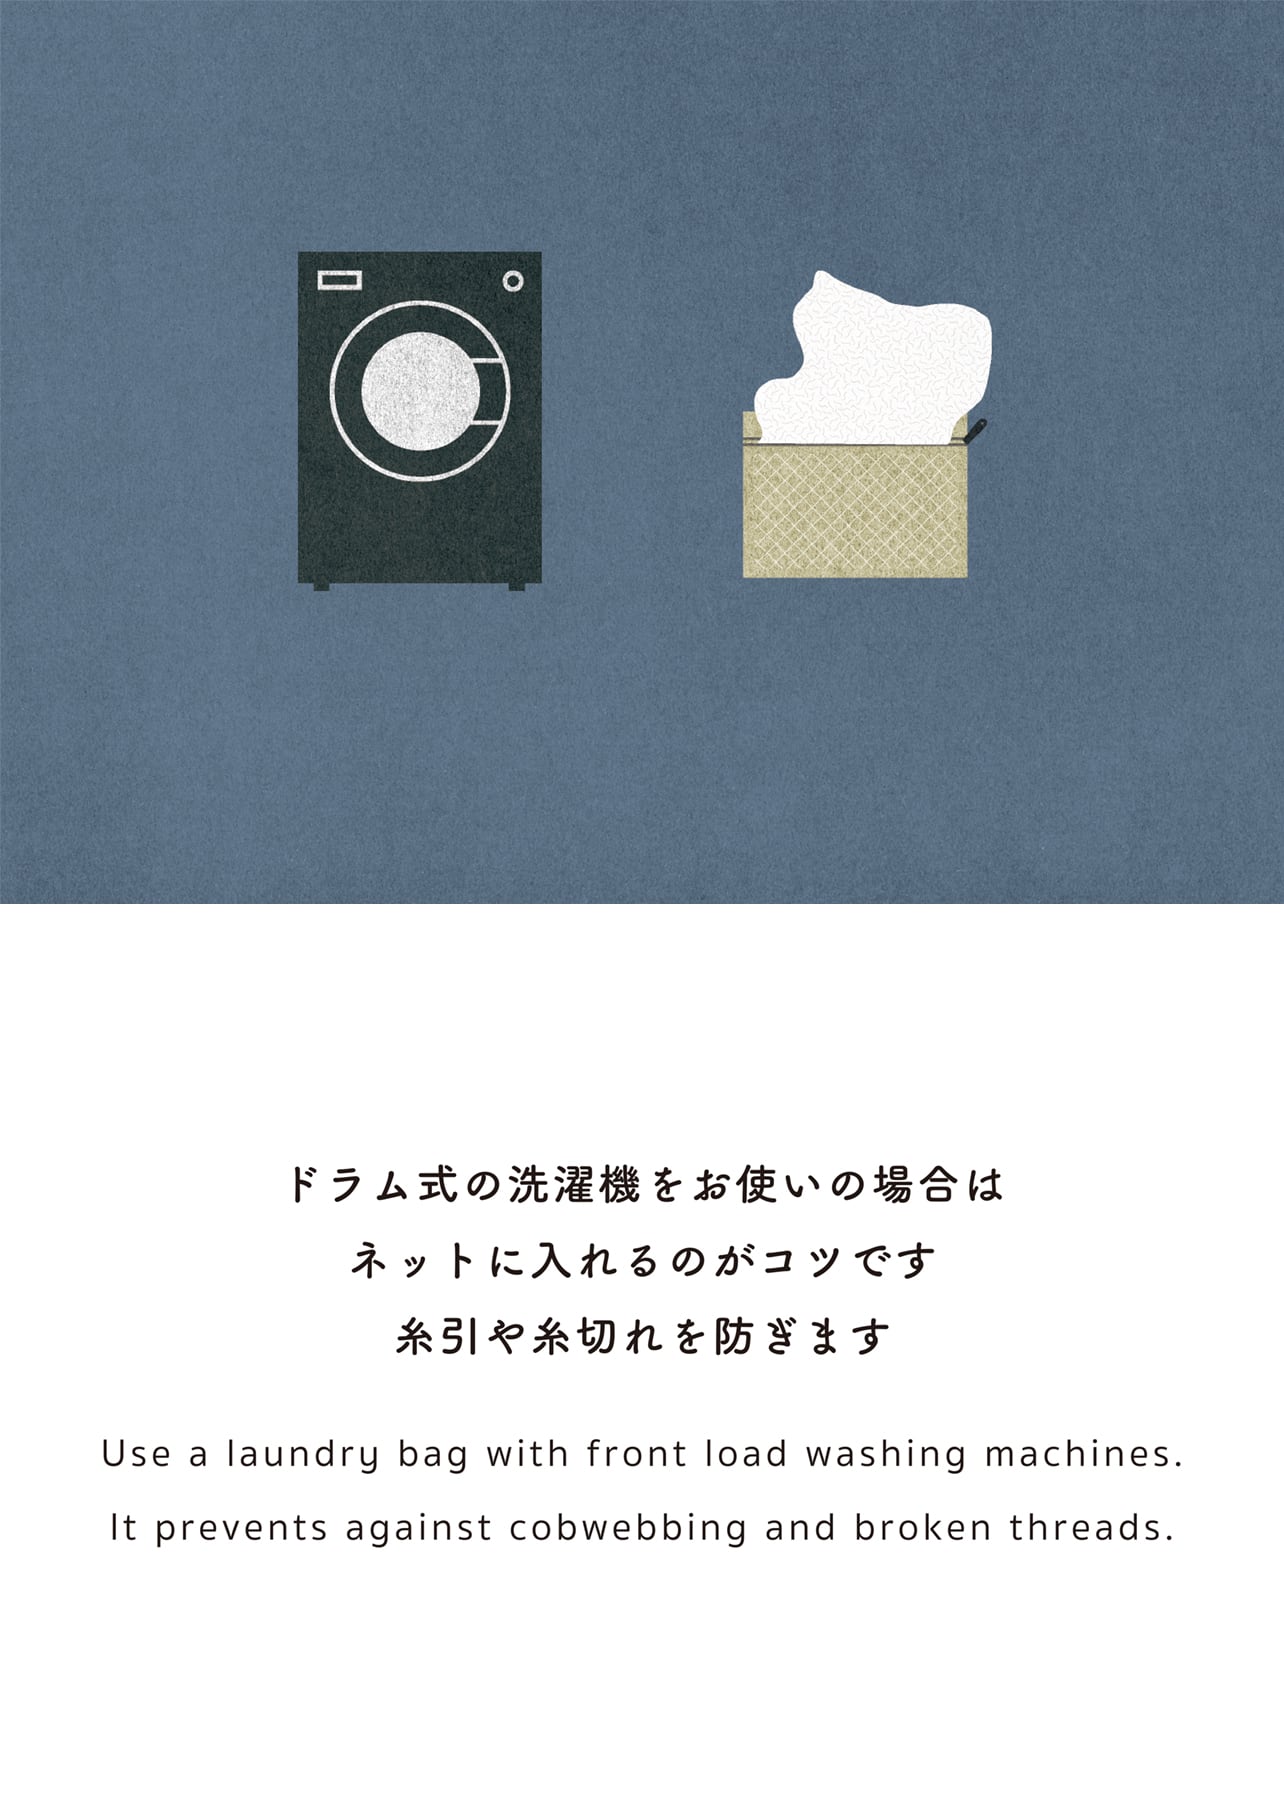 ドラム式の洗濯機をお使いの場合は ネットに入れるのがコツです 糸引や糸切れを防ぎます